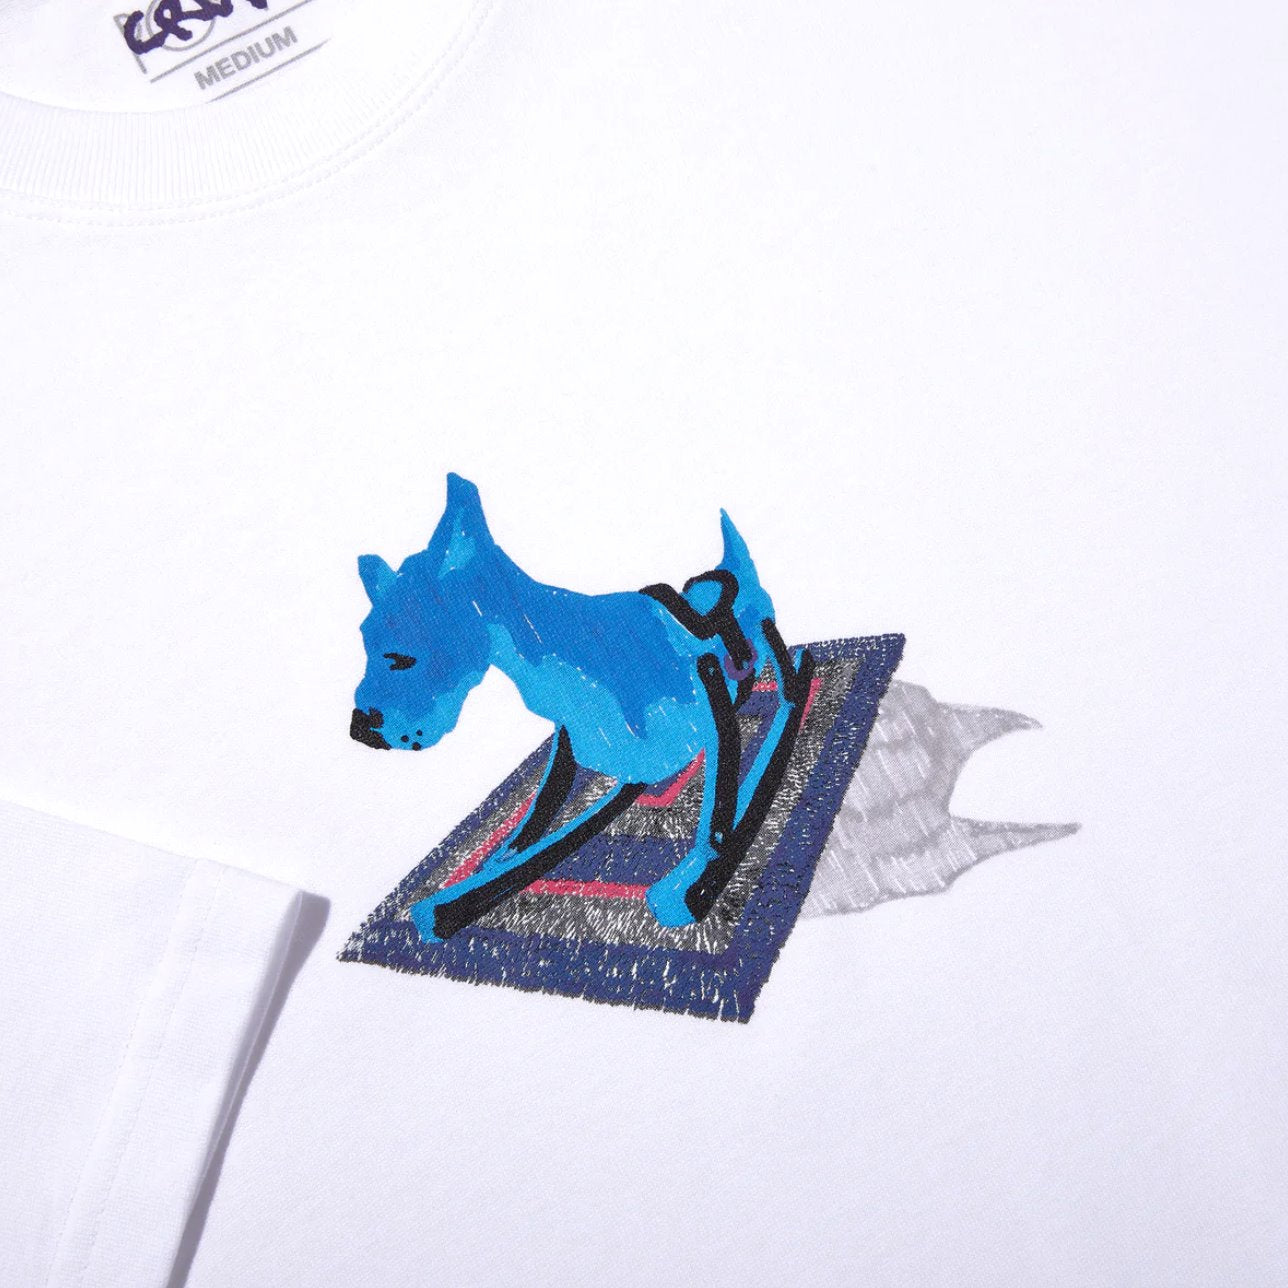 Polar Skate Co. Dog Unisex T-Shirt T-Shirt Polar Skate Co. 